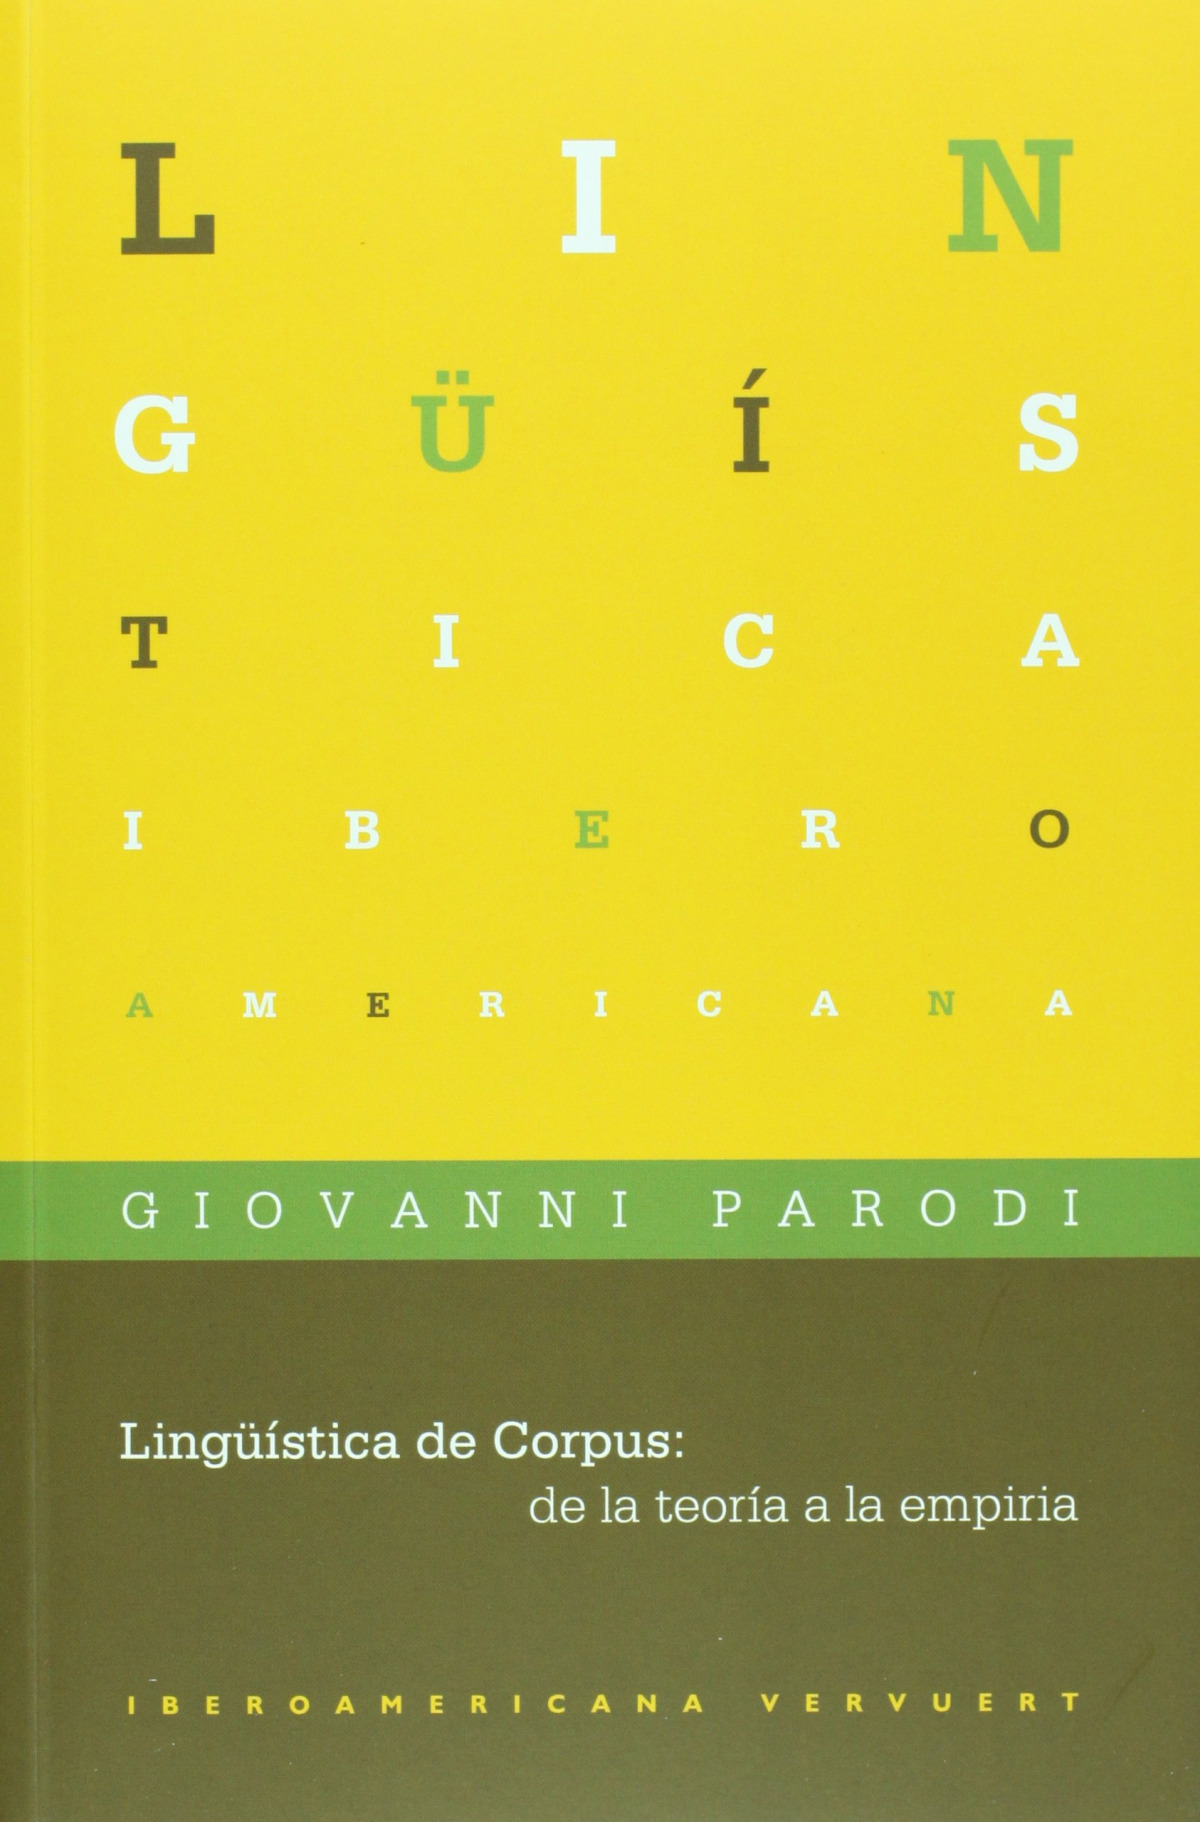 Linguistica de corpus:de teoria a empiria - Parodi, Giovanni